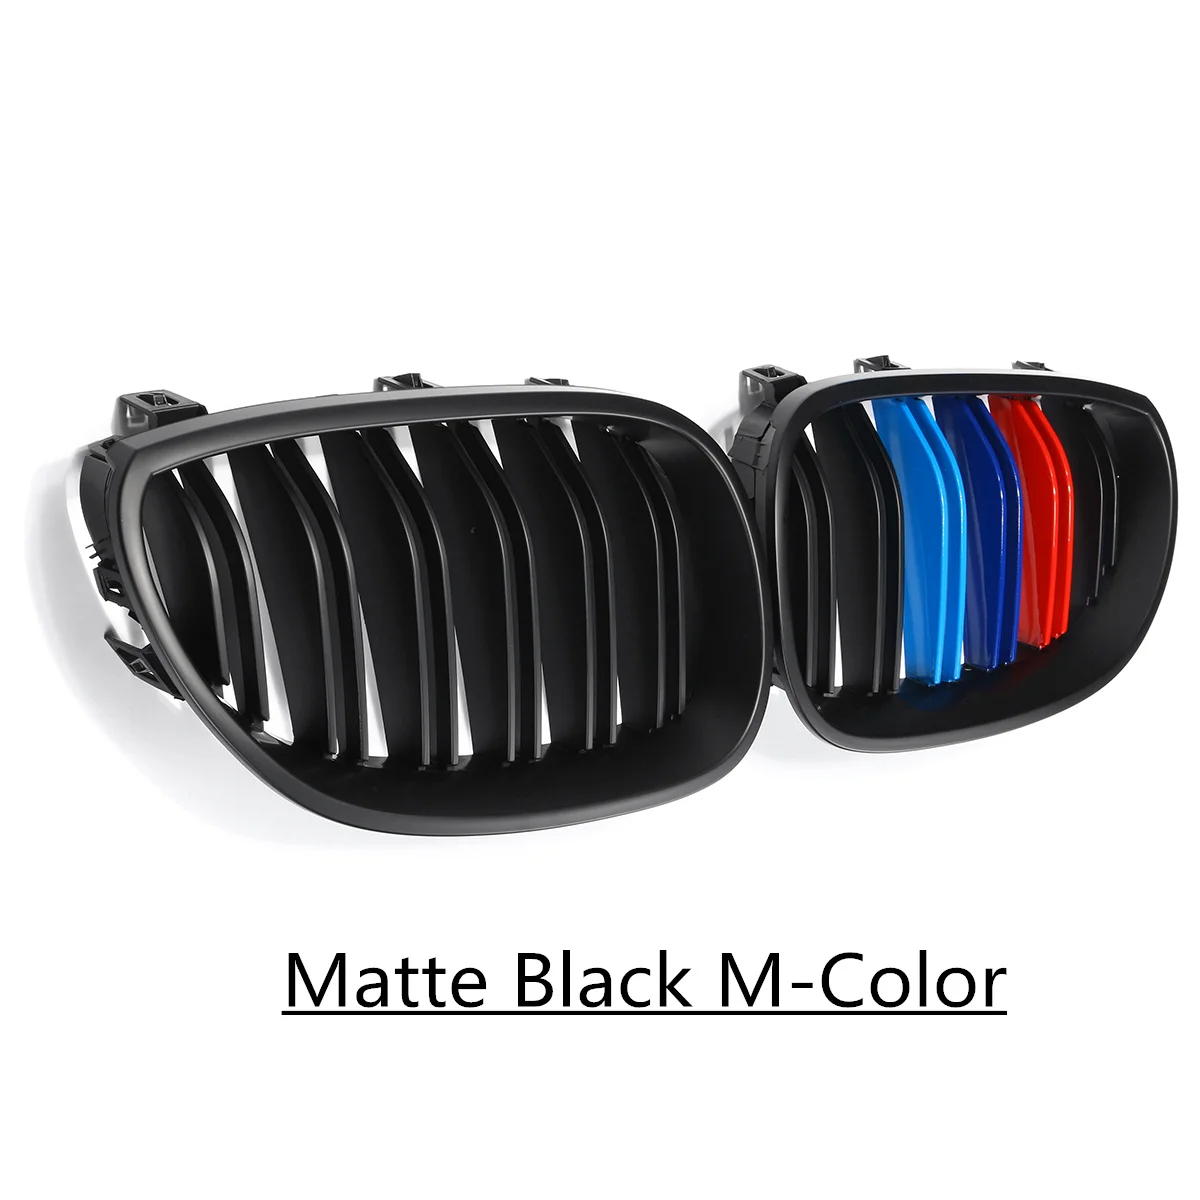 Матовая и глянцевая черная m-цветная сменная Автомобильная Передняя почечная решетка гоночная Спортивная решетка для BMW E60 2003-2006 2007 2008 2009 2010 - Цвет: Matte Black